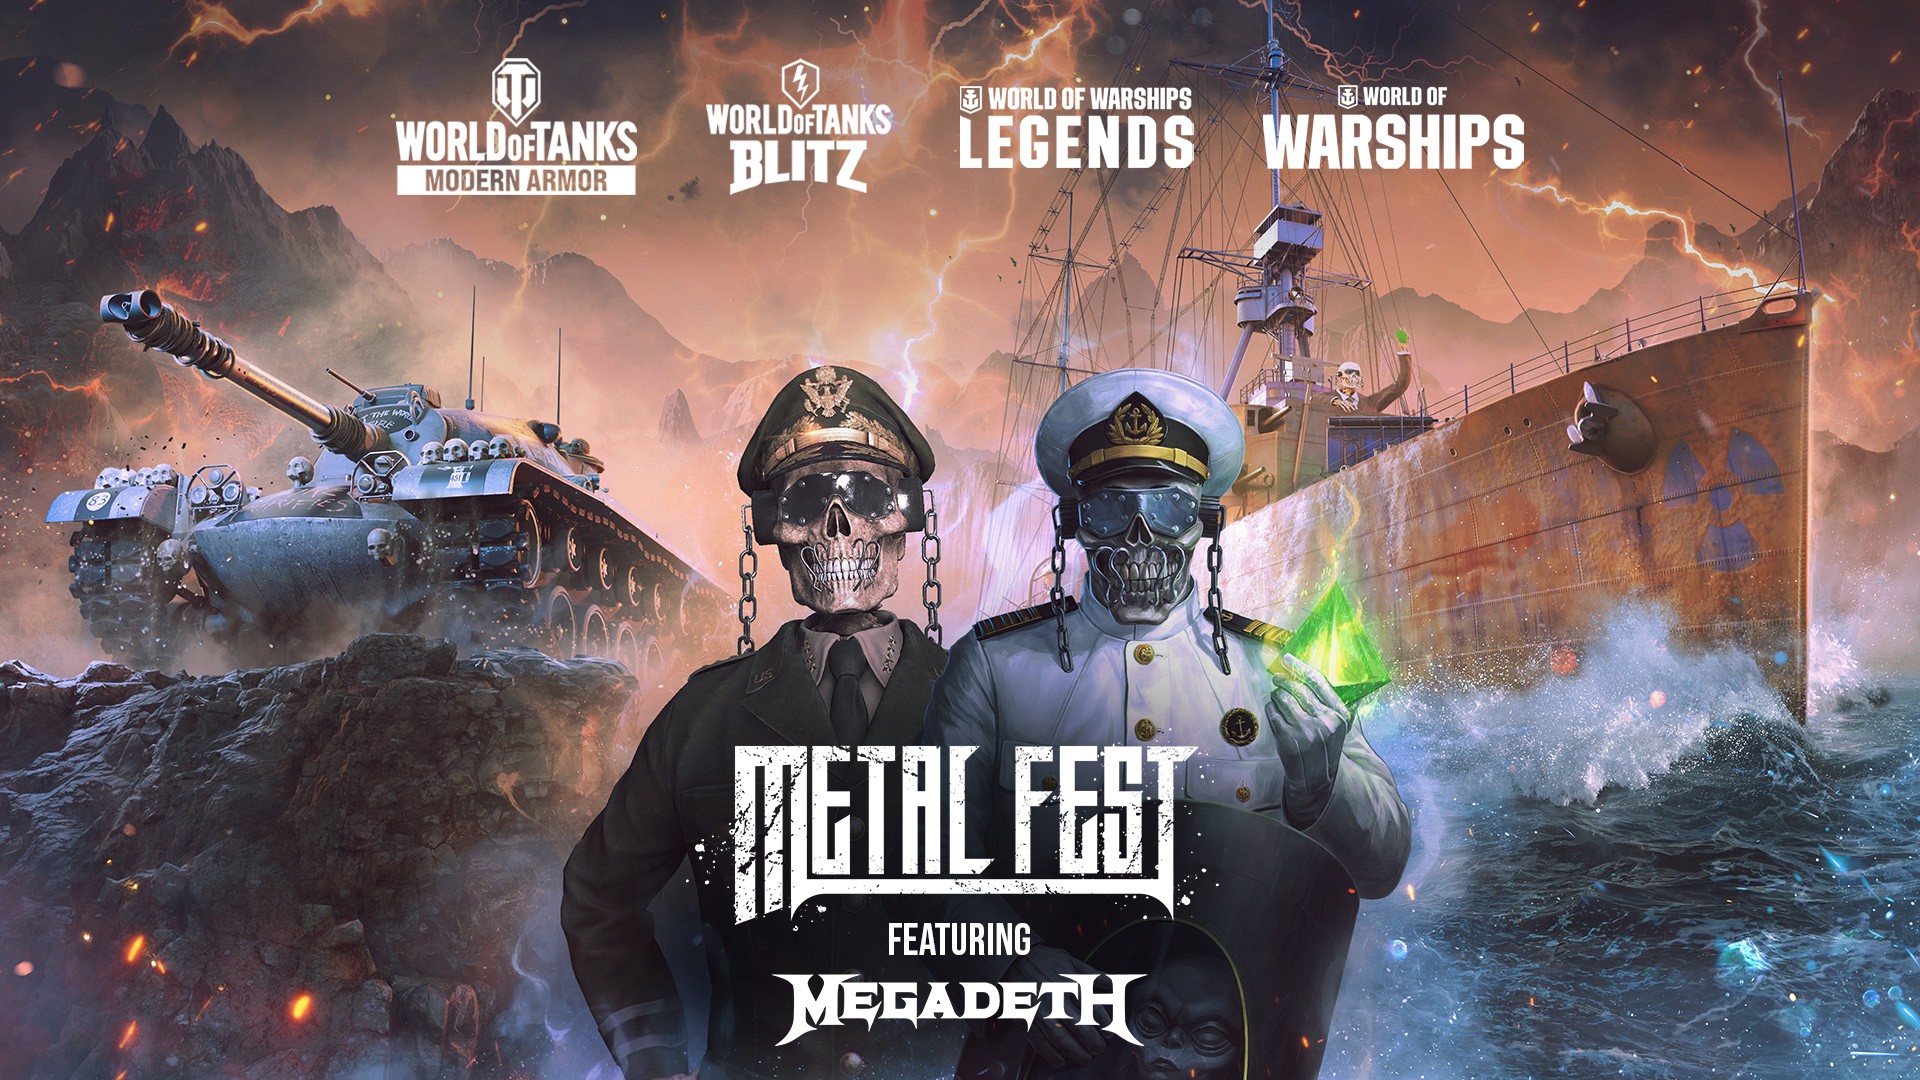 Zespół Megadeth gwiazdą wydarzenia Wargaming Metal Fest